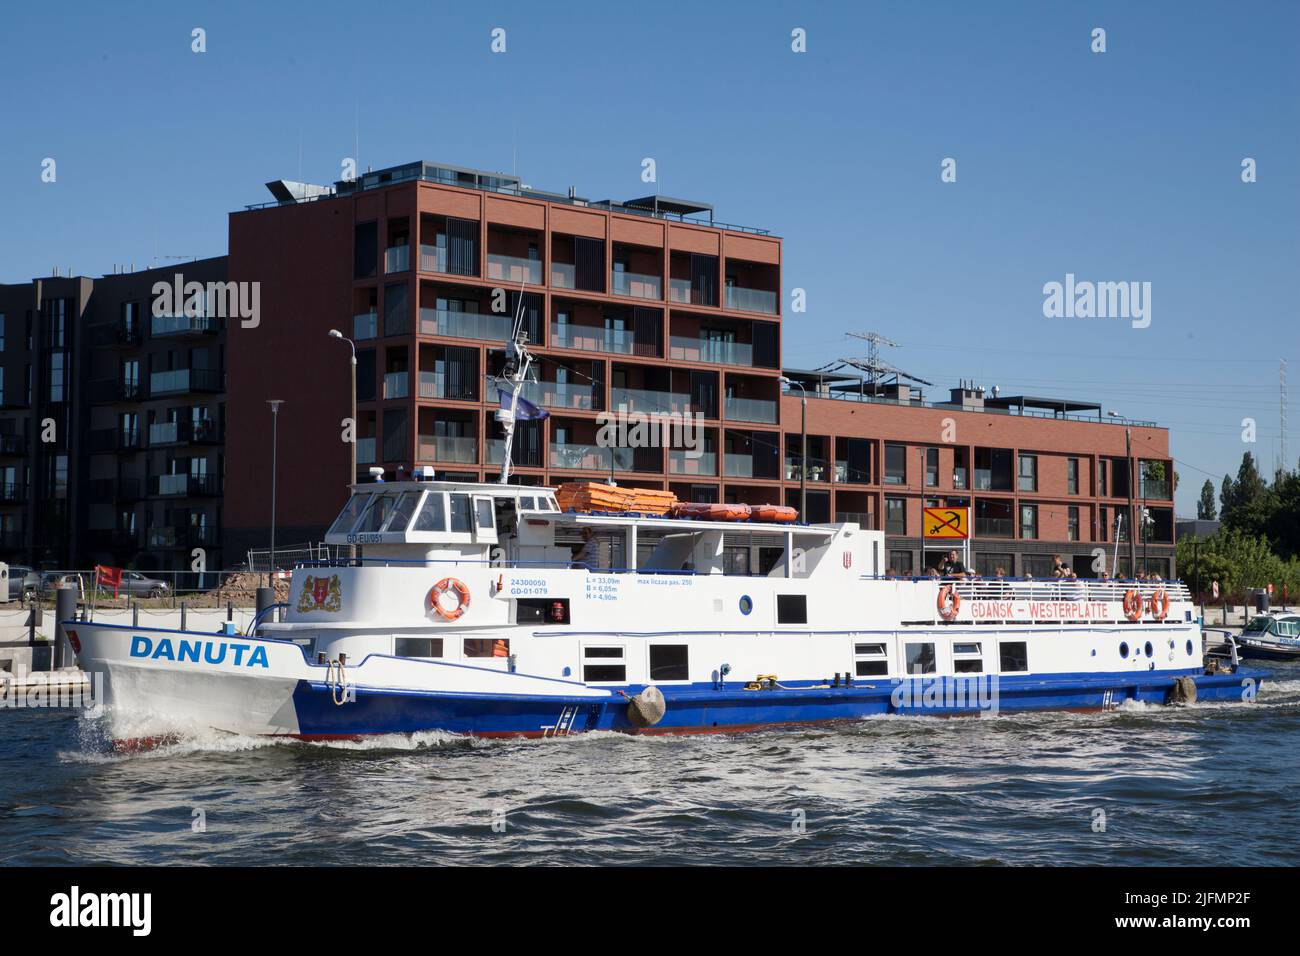 Polish Cruise ship Danuta Motlawa river canal in Gdansk, Poland, Stock Photo